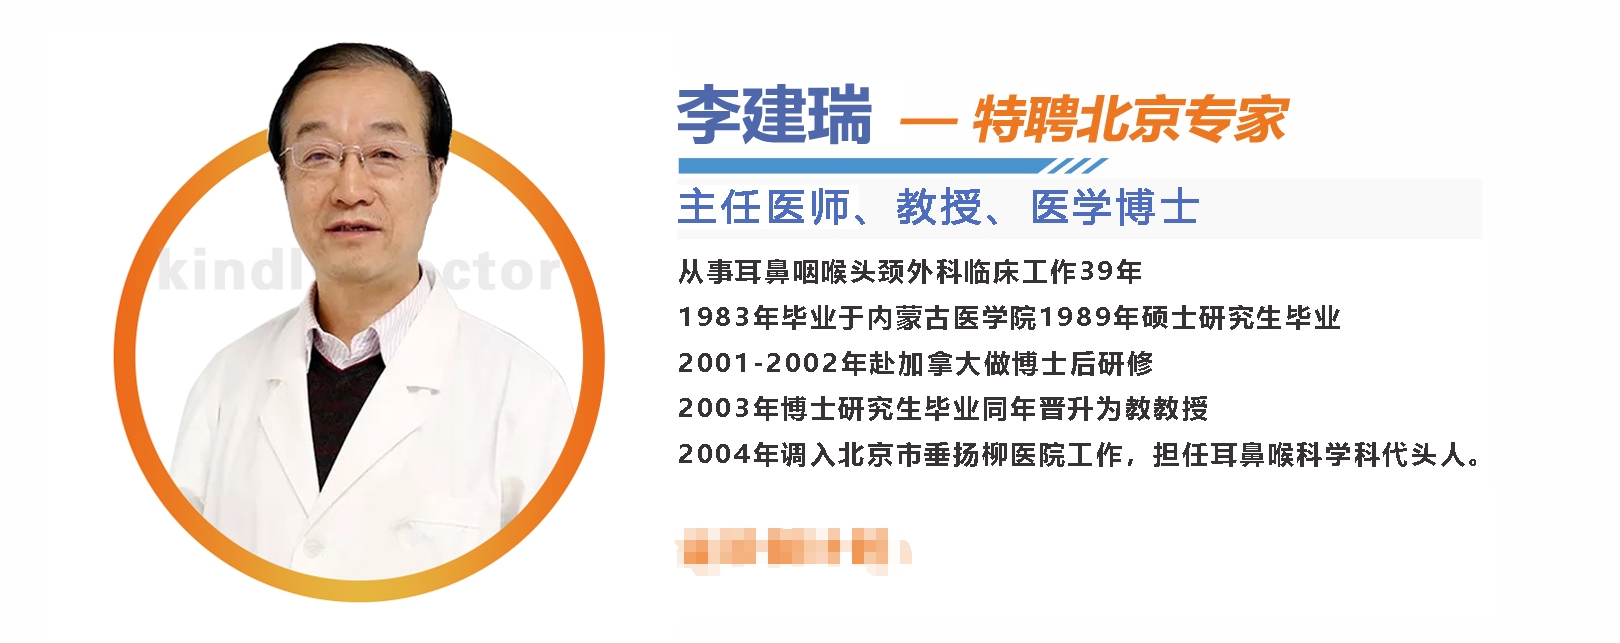 坐诊预告 | 7月7日上午 北京清华大学附属医院耳鼻喉专家前来坐诊！